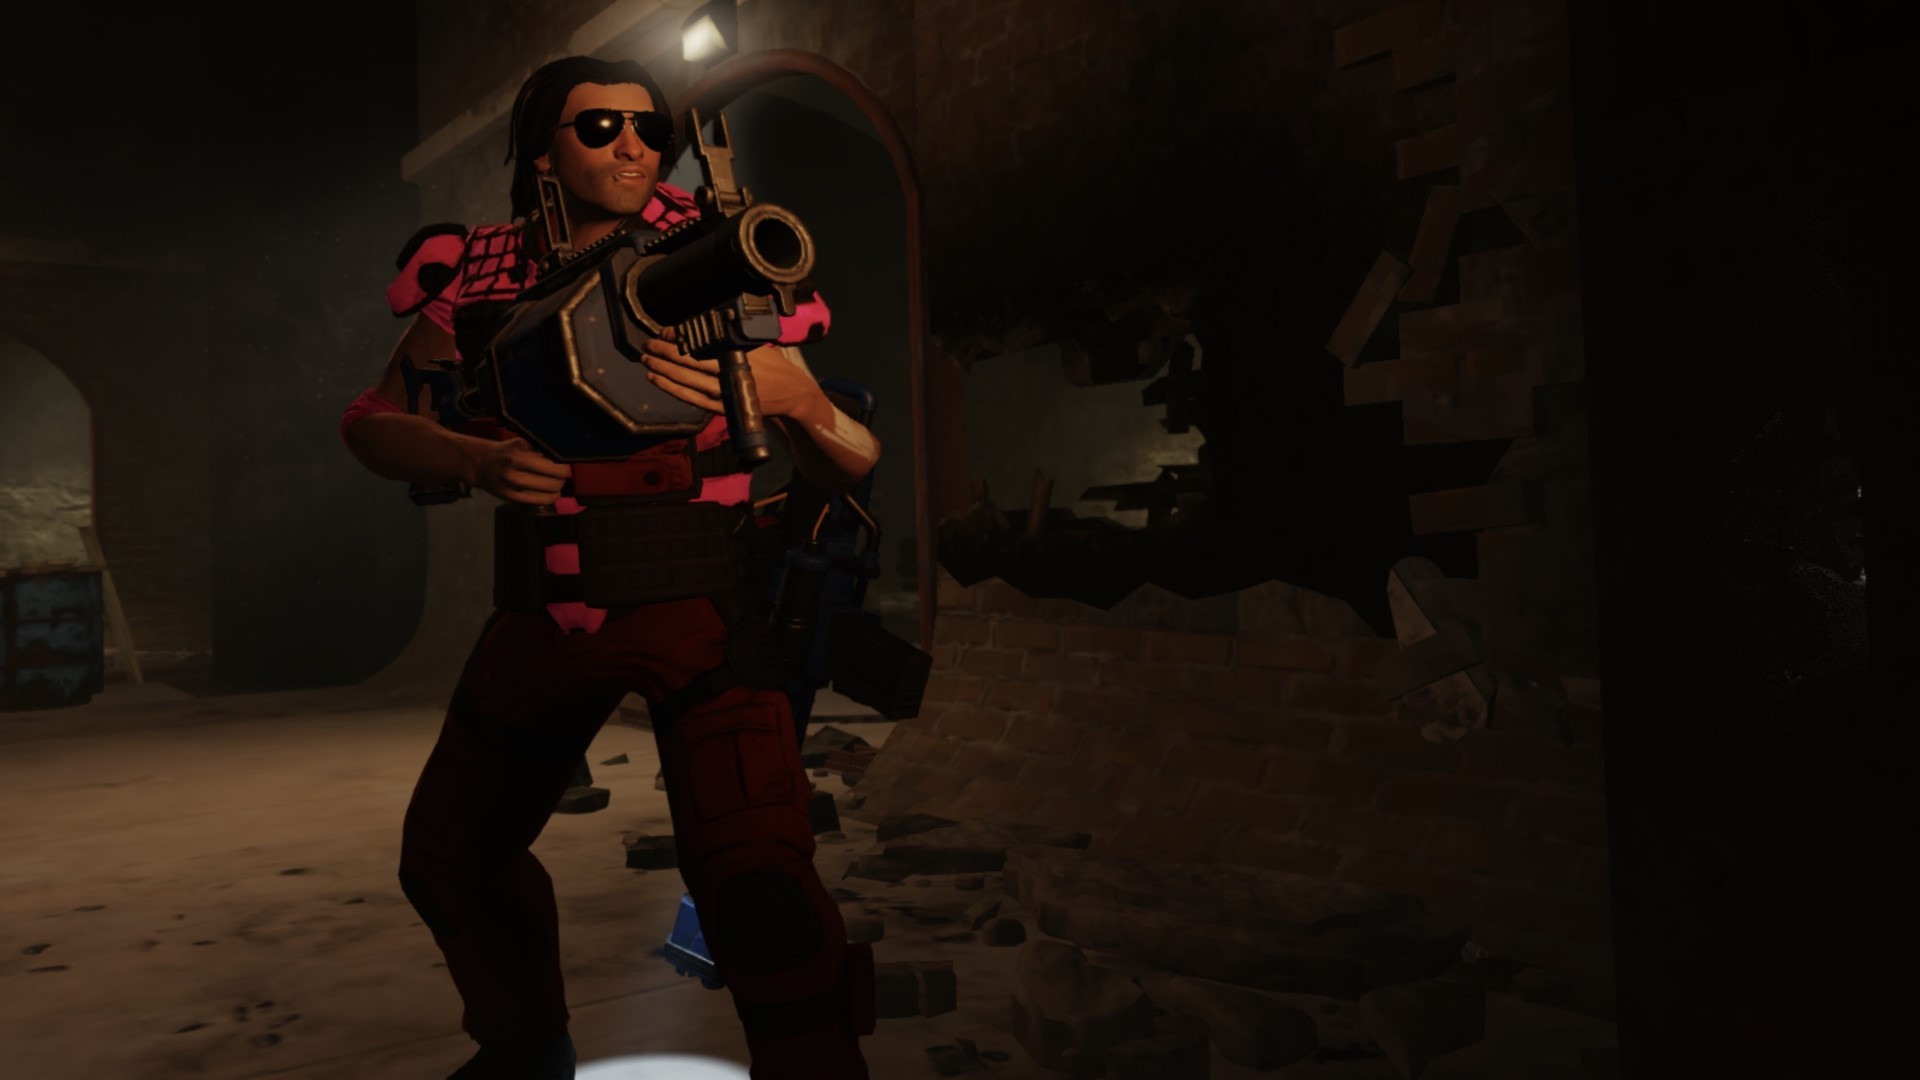 משחקי אסטרטגיה ניידים הטובים ביותר: אוסף XCOM 2. תמונה מציגה אדם עם אקדח גדול שעומד במסדרון אבן